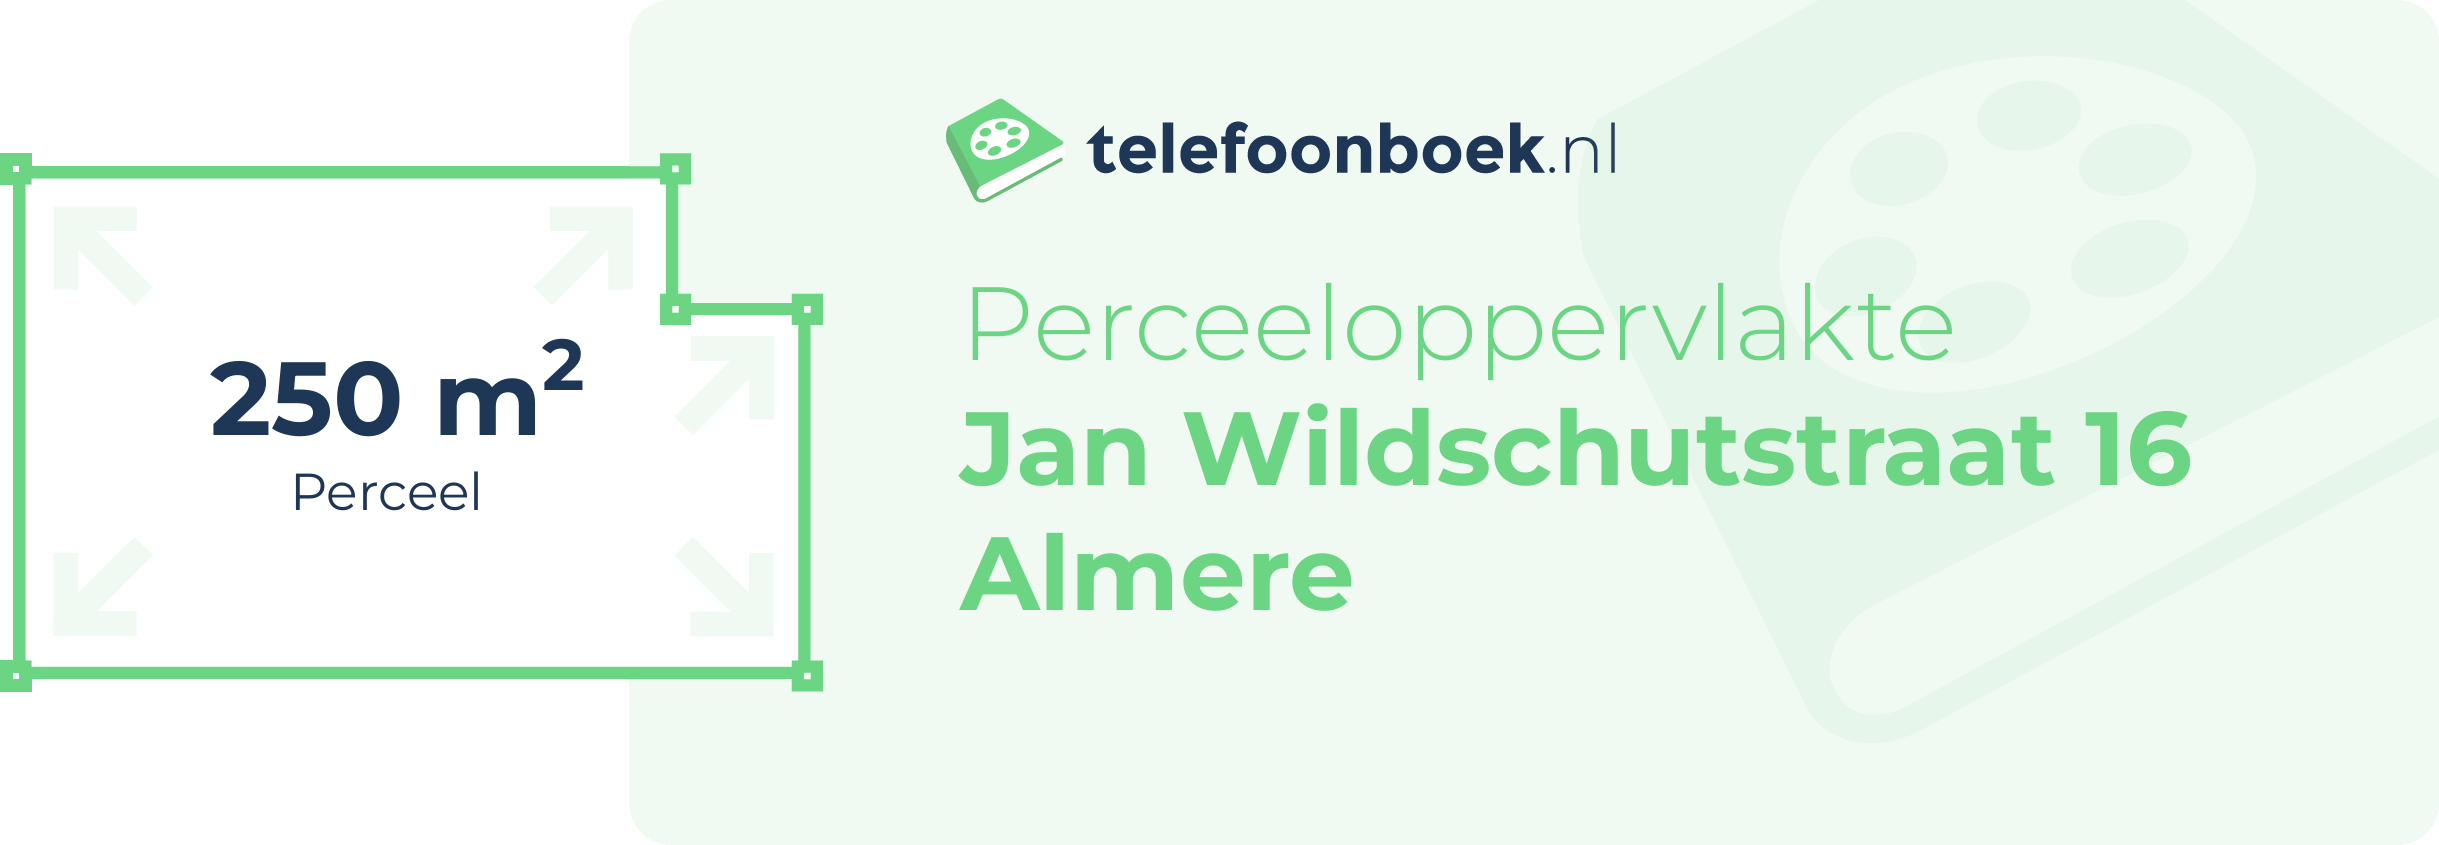 Perceeloppervlakte Jan Wildschutstraat 16 Almere